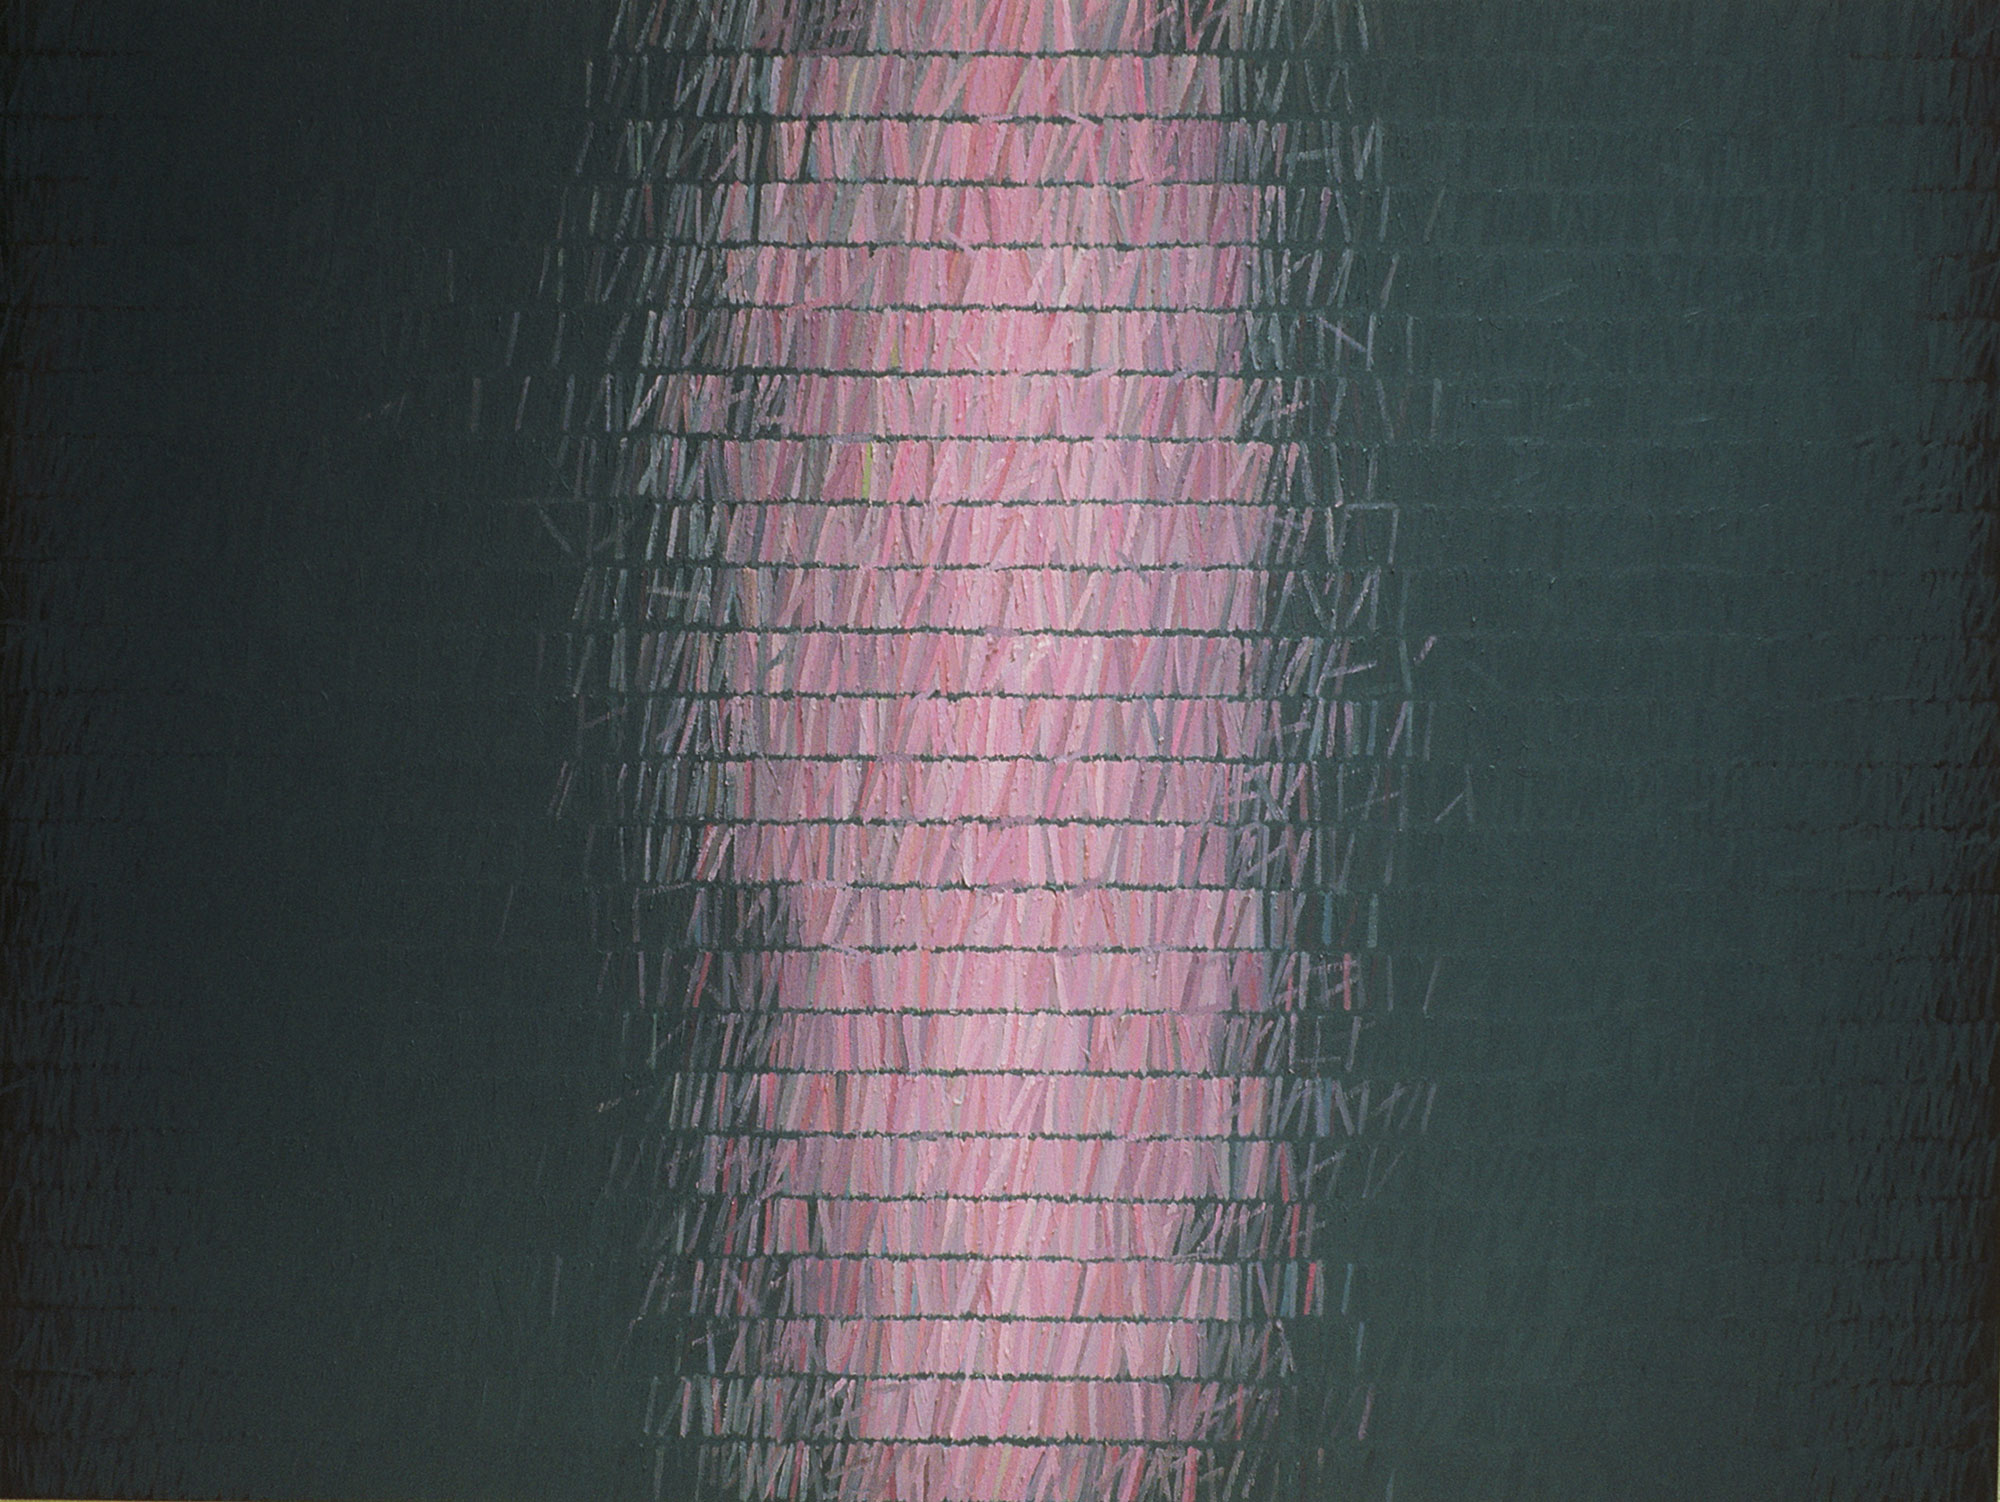 Kenneth Dingwall, Distraction, 1985, oil on canvas, 160cm x 214cm